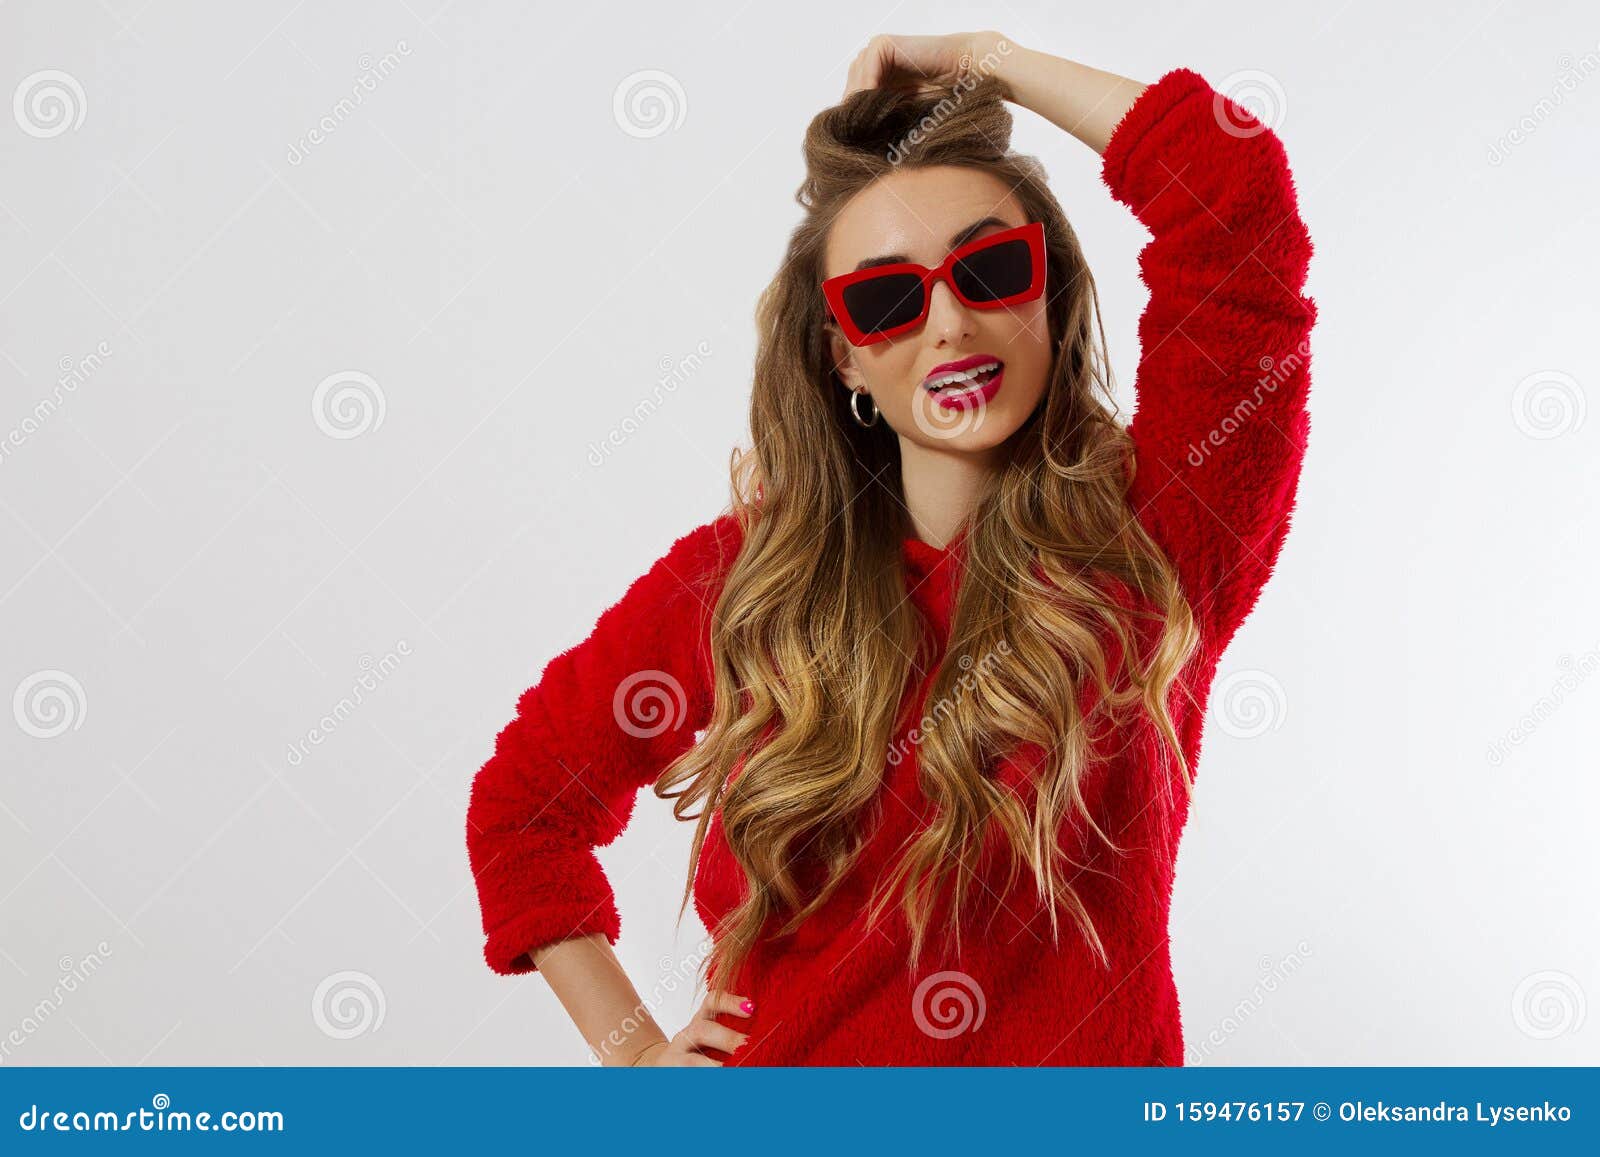 Feliz, Conmoción, Mujer Se Queda Callada Chica Con Ropa De Capucha Roja De Lentes De Sol Rojas Fondo B Imagen de archivo - Imagen de divertido, grande: 159476157